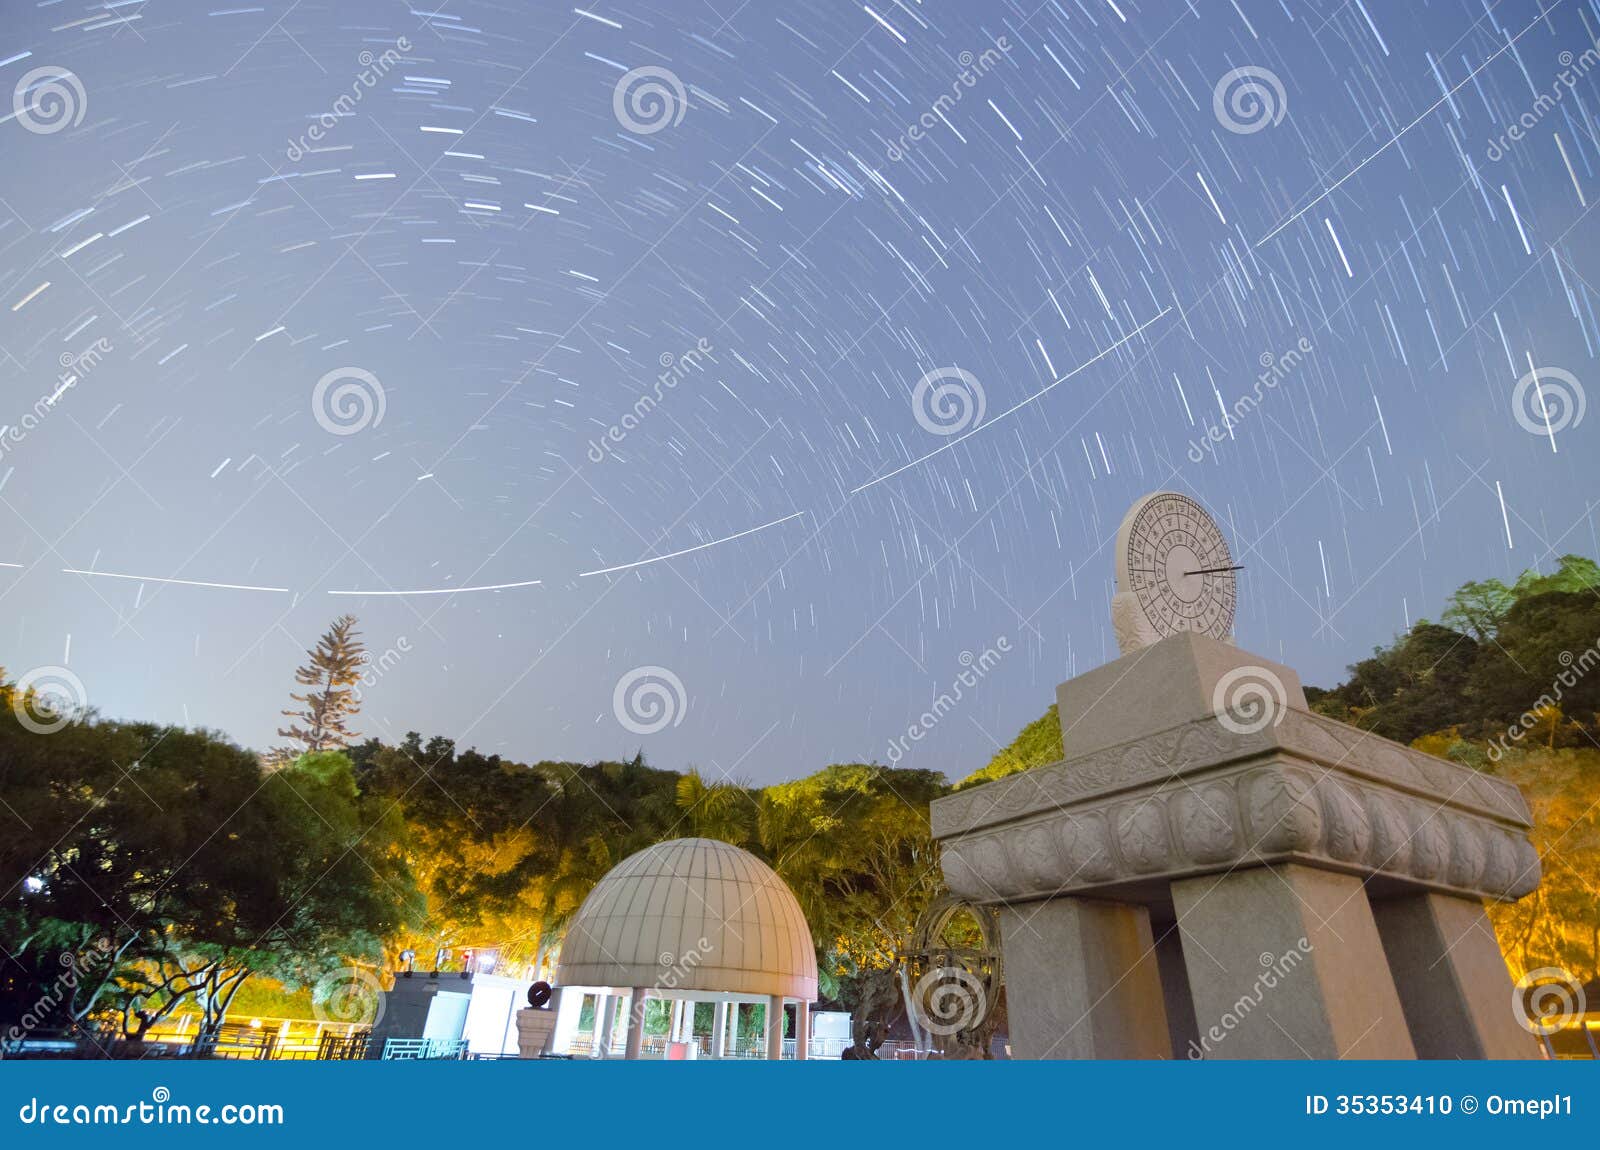 Zonnewijzer, Vliegtuigsleep en Stersleep. Een beeld van een equatoriale zonnewijzer met Chinese karakters die op de tijd wijzen en de ster slepen en ook vliegtuigsleep in de hemel.